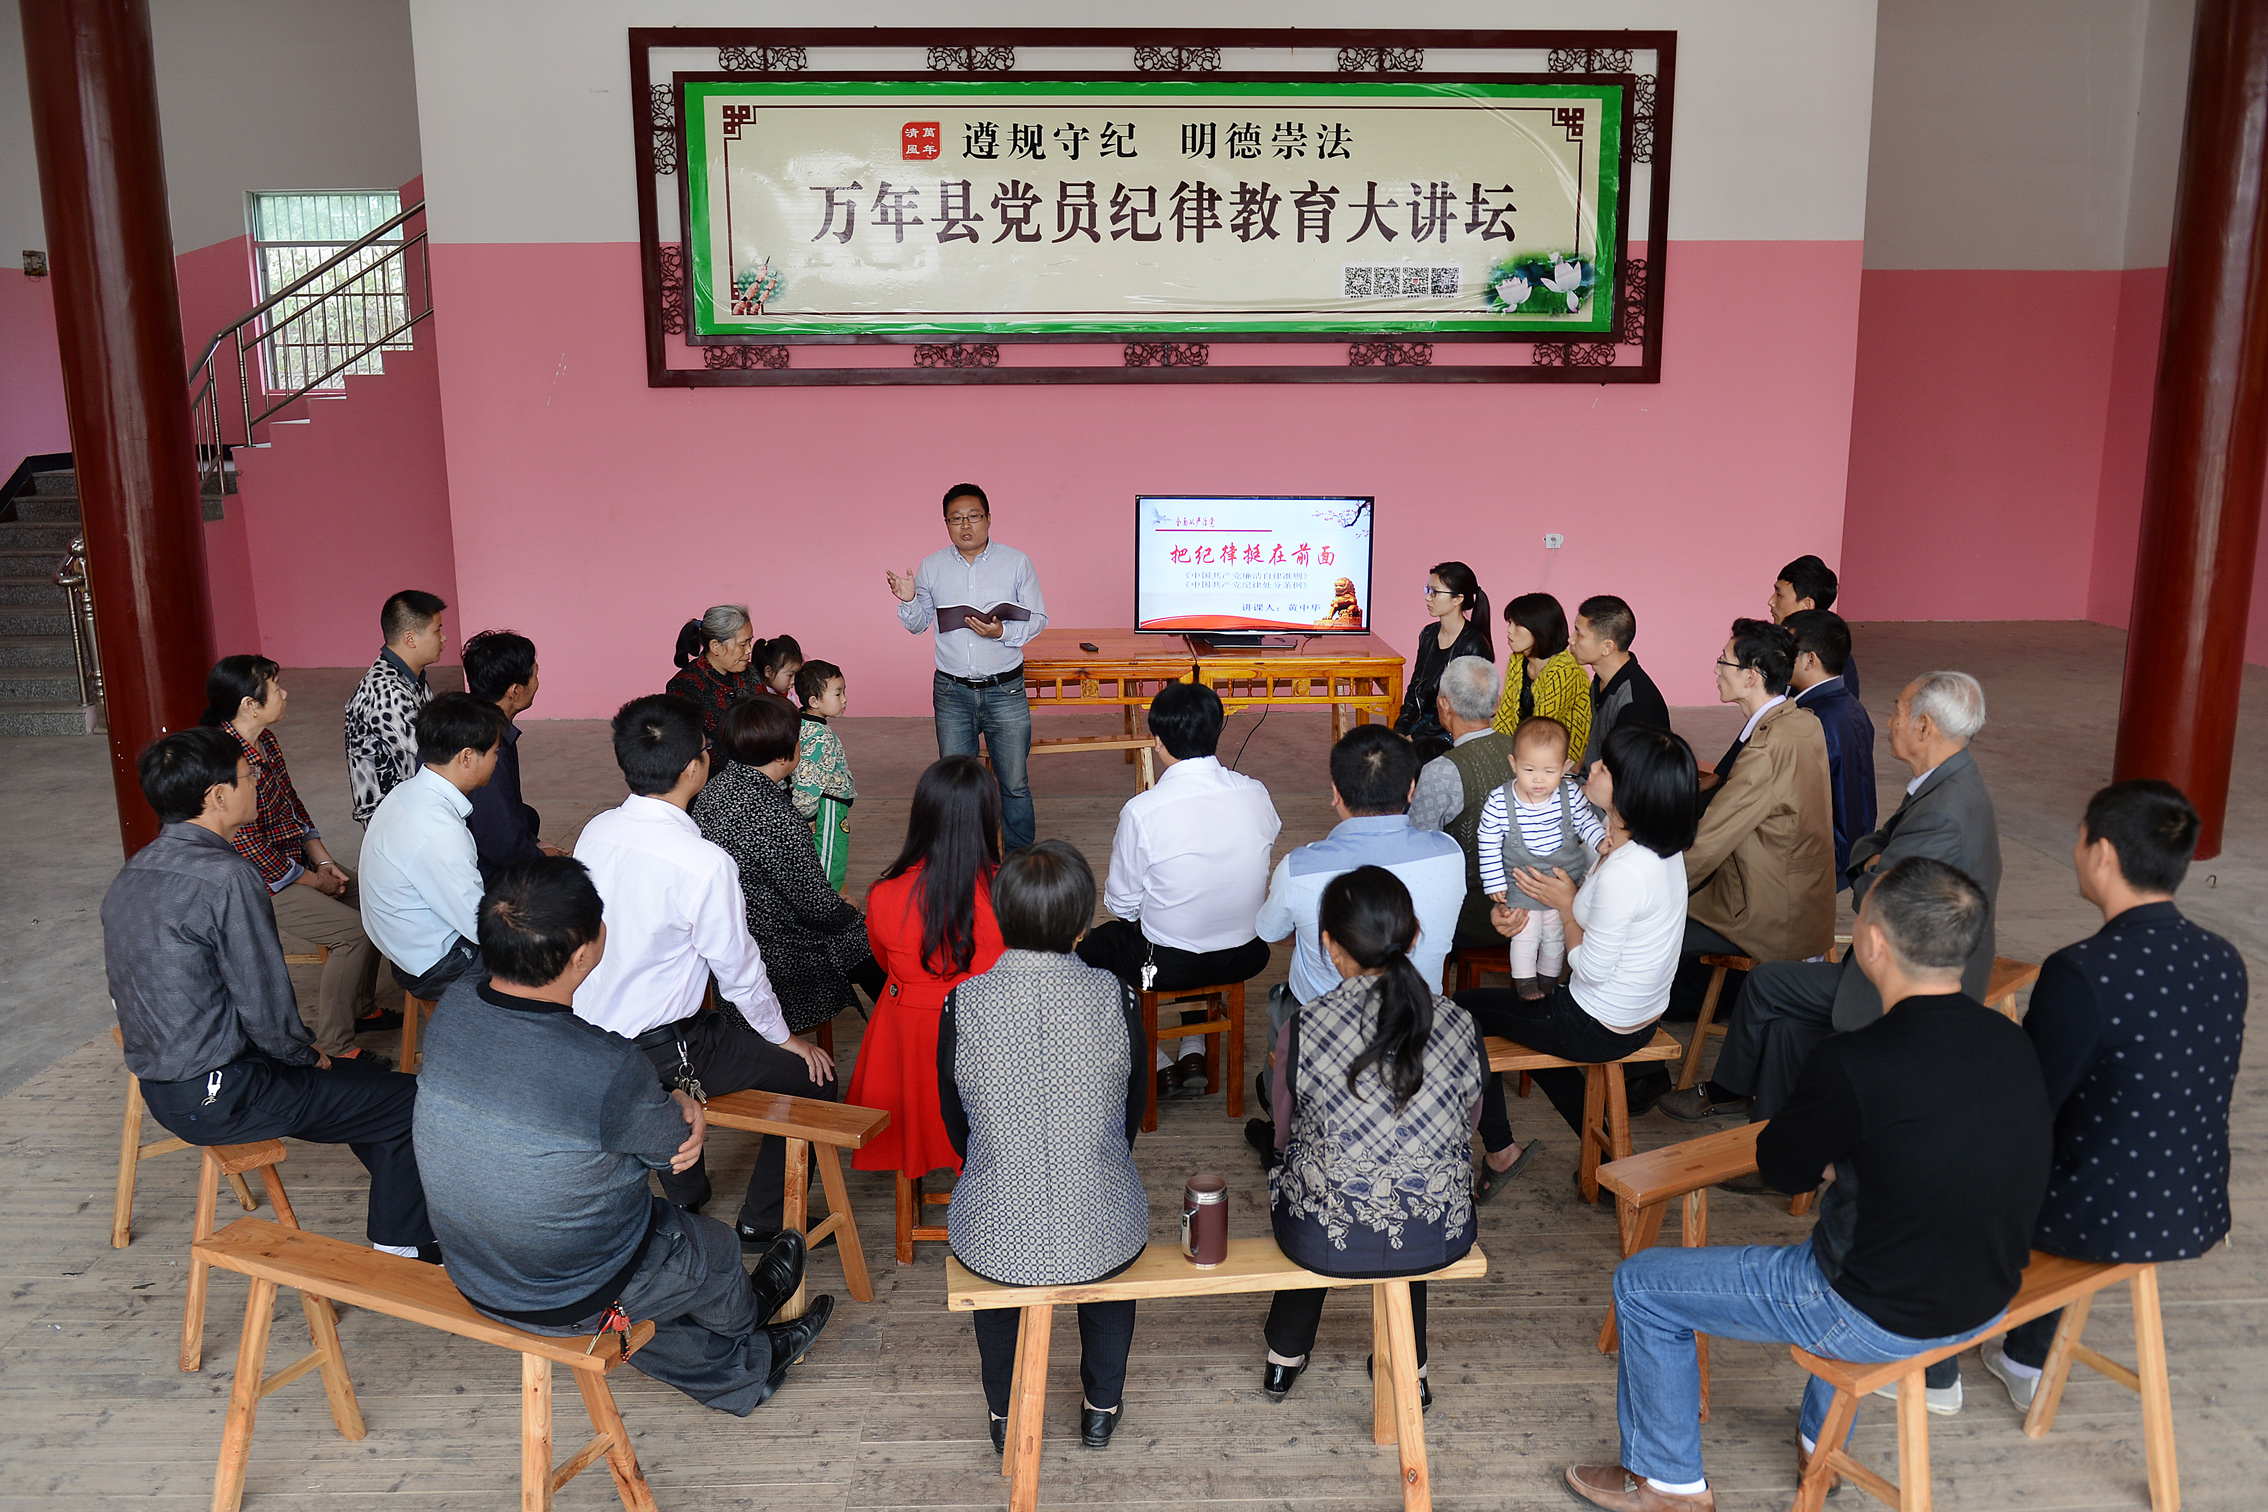  　　2015年10月28日，江西省上饶市万年县陈营镇马塘社区纪检监察干事黄中华在为党员和群众做题为“把纪律挺在前面”的专题宣讲。